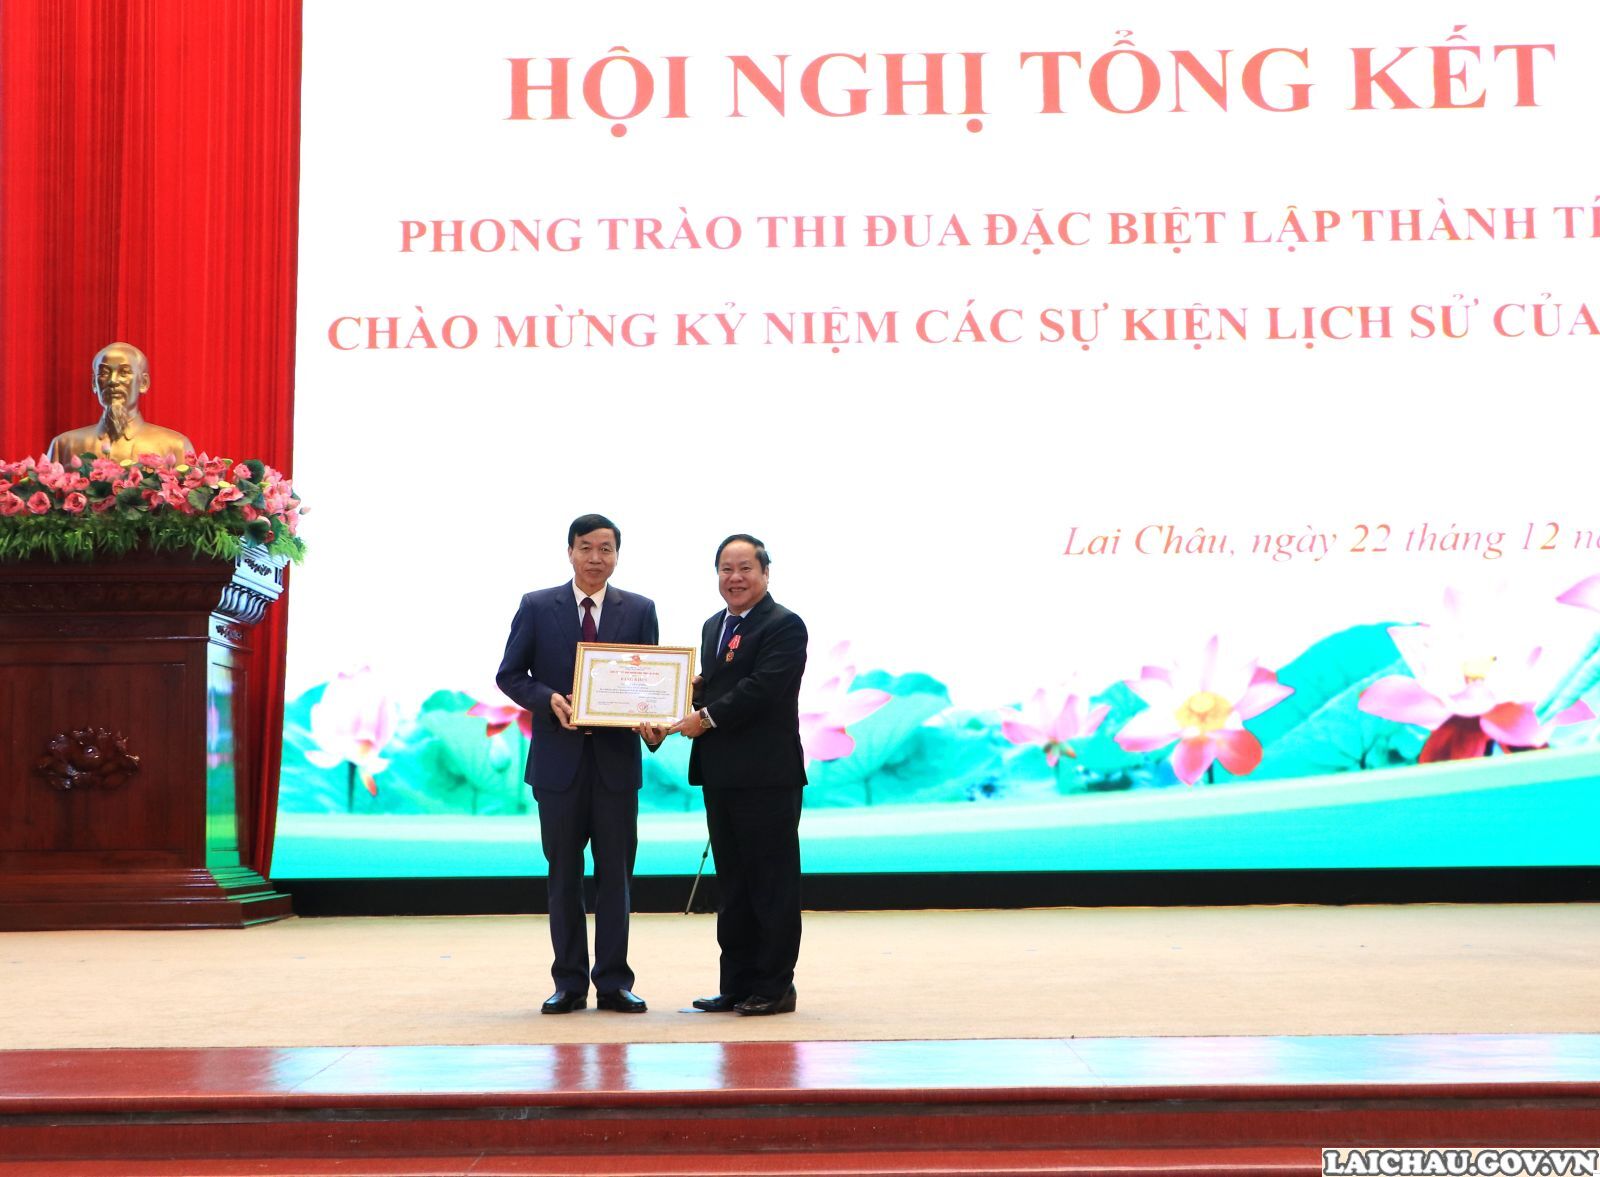 Lai Châu: Tổng kết phong trào thi đua đặc biệt lập thành tích chào mừng kỷ niệm các sự kiện lịch sử- Ảnh 9.